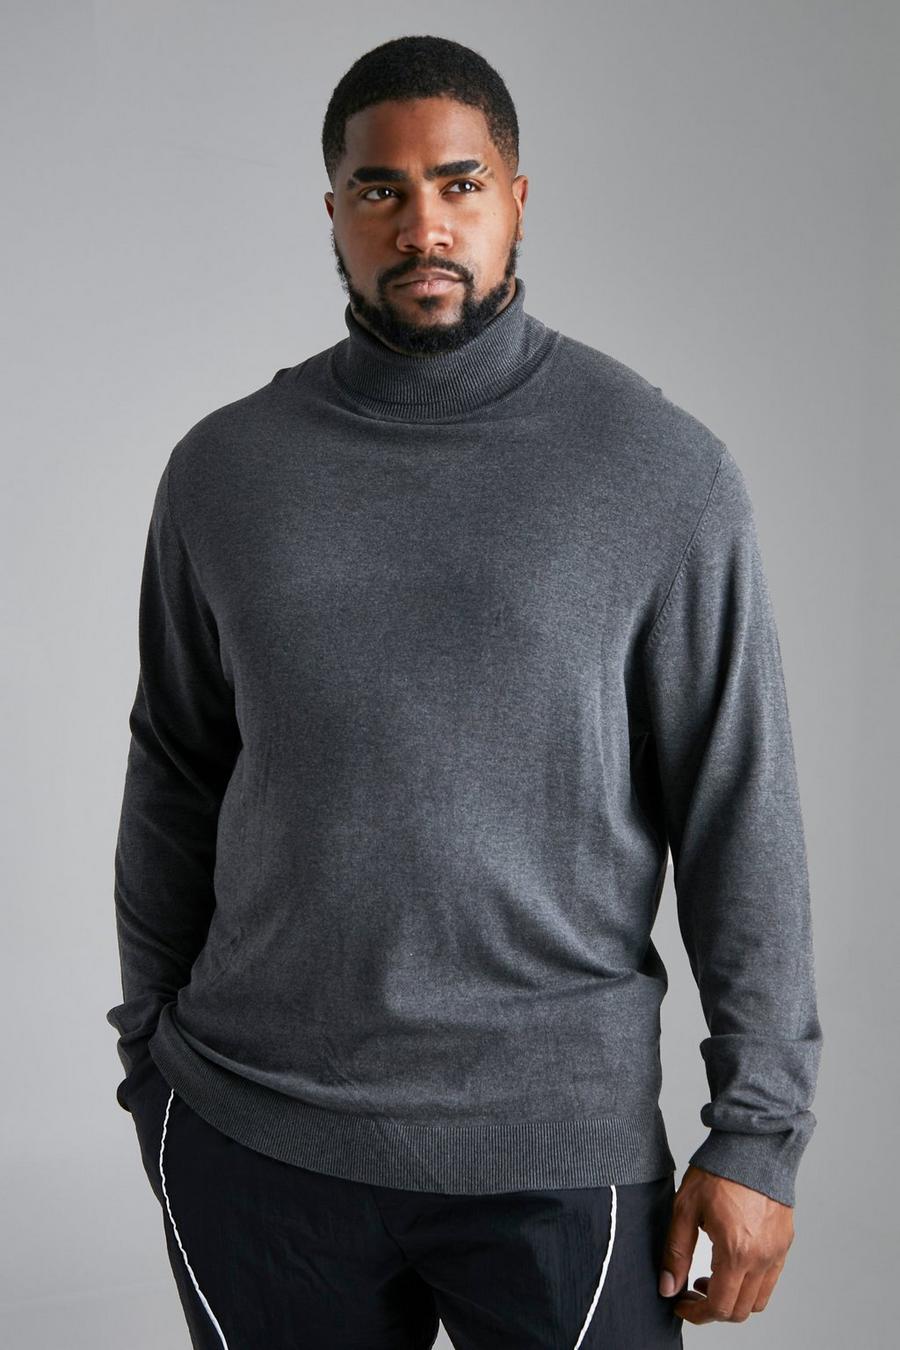 Charcoal grigio סוודר בגזרה רגילה מחומרים ממוחזרים עם צווארון נגלל למידות גדולות